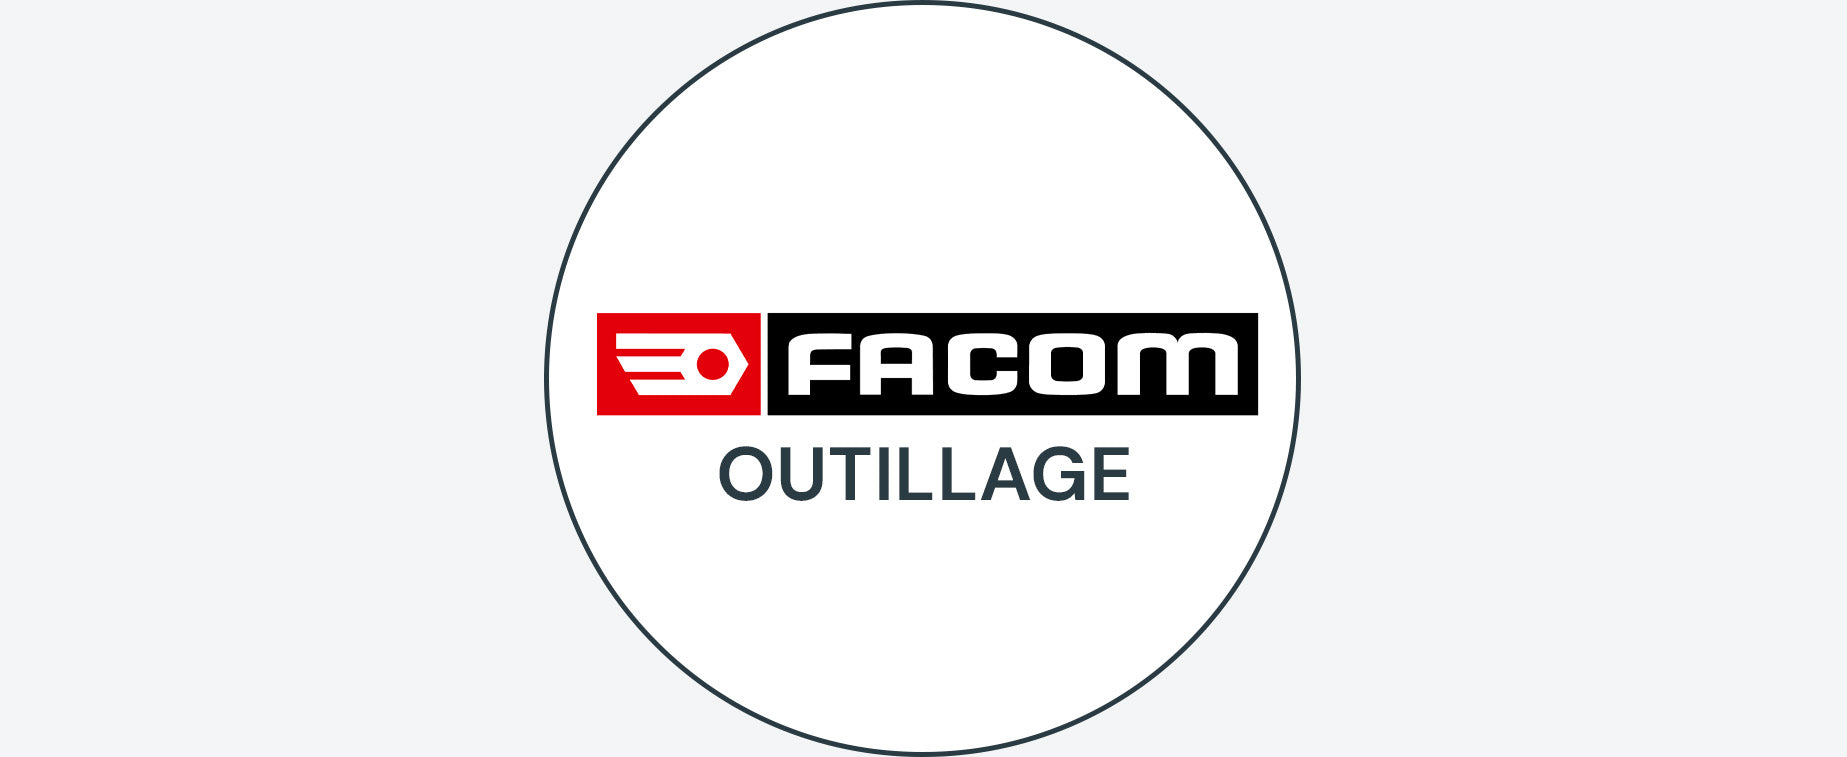 FACOM OUTILLAGE